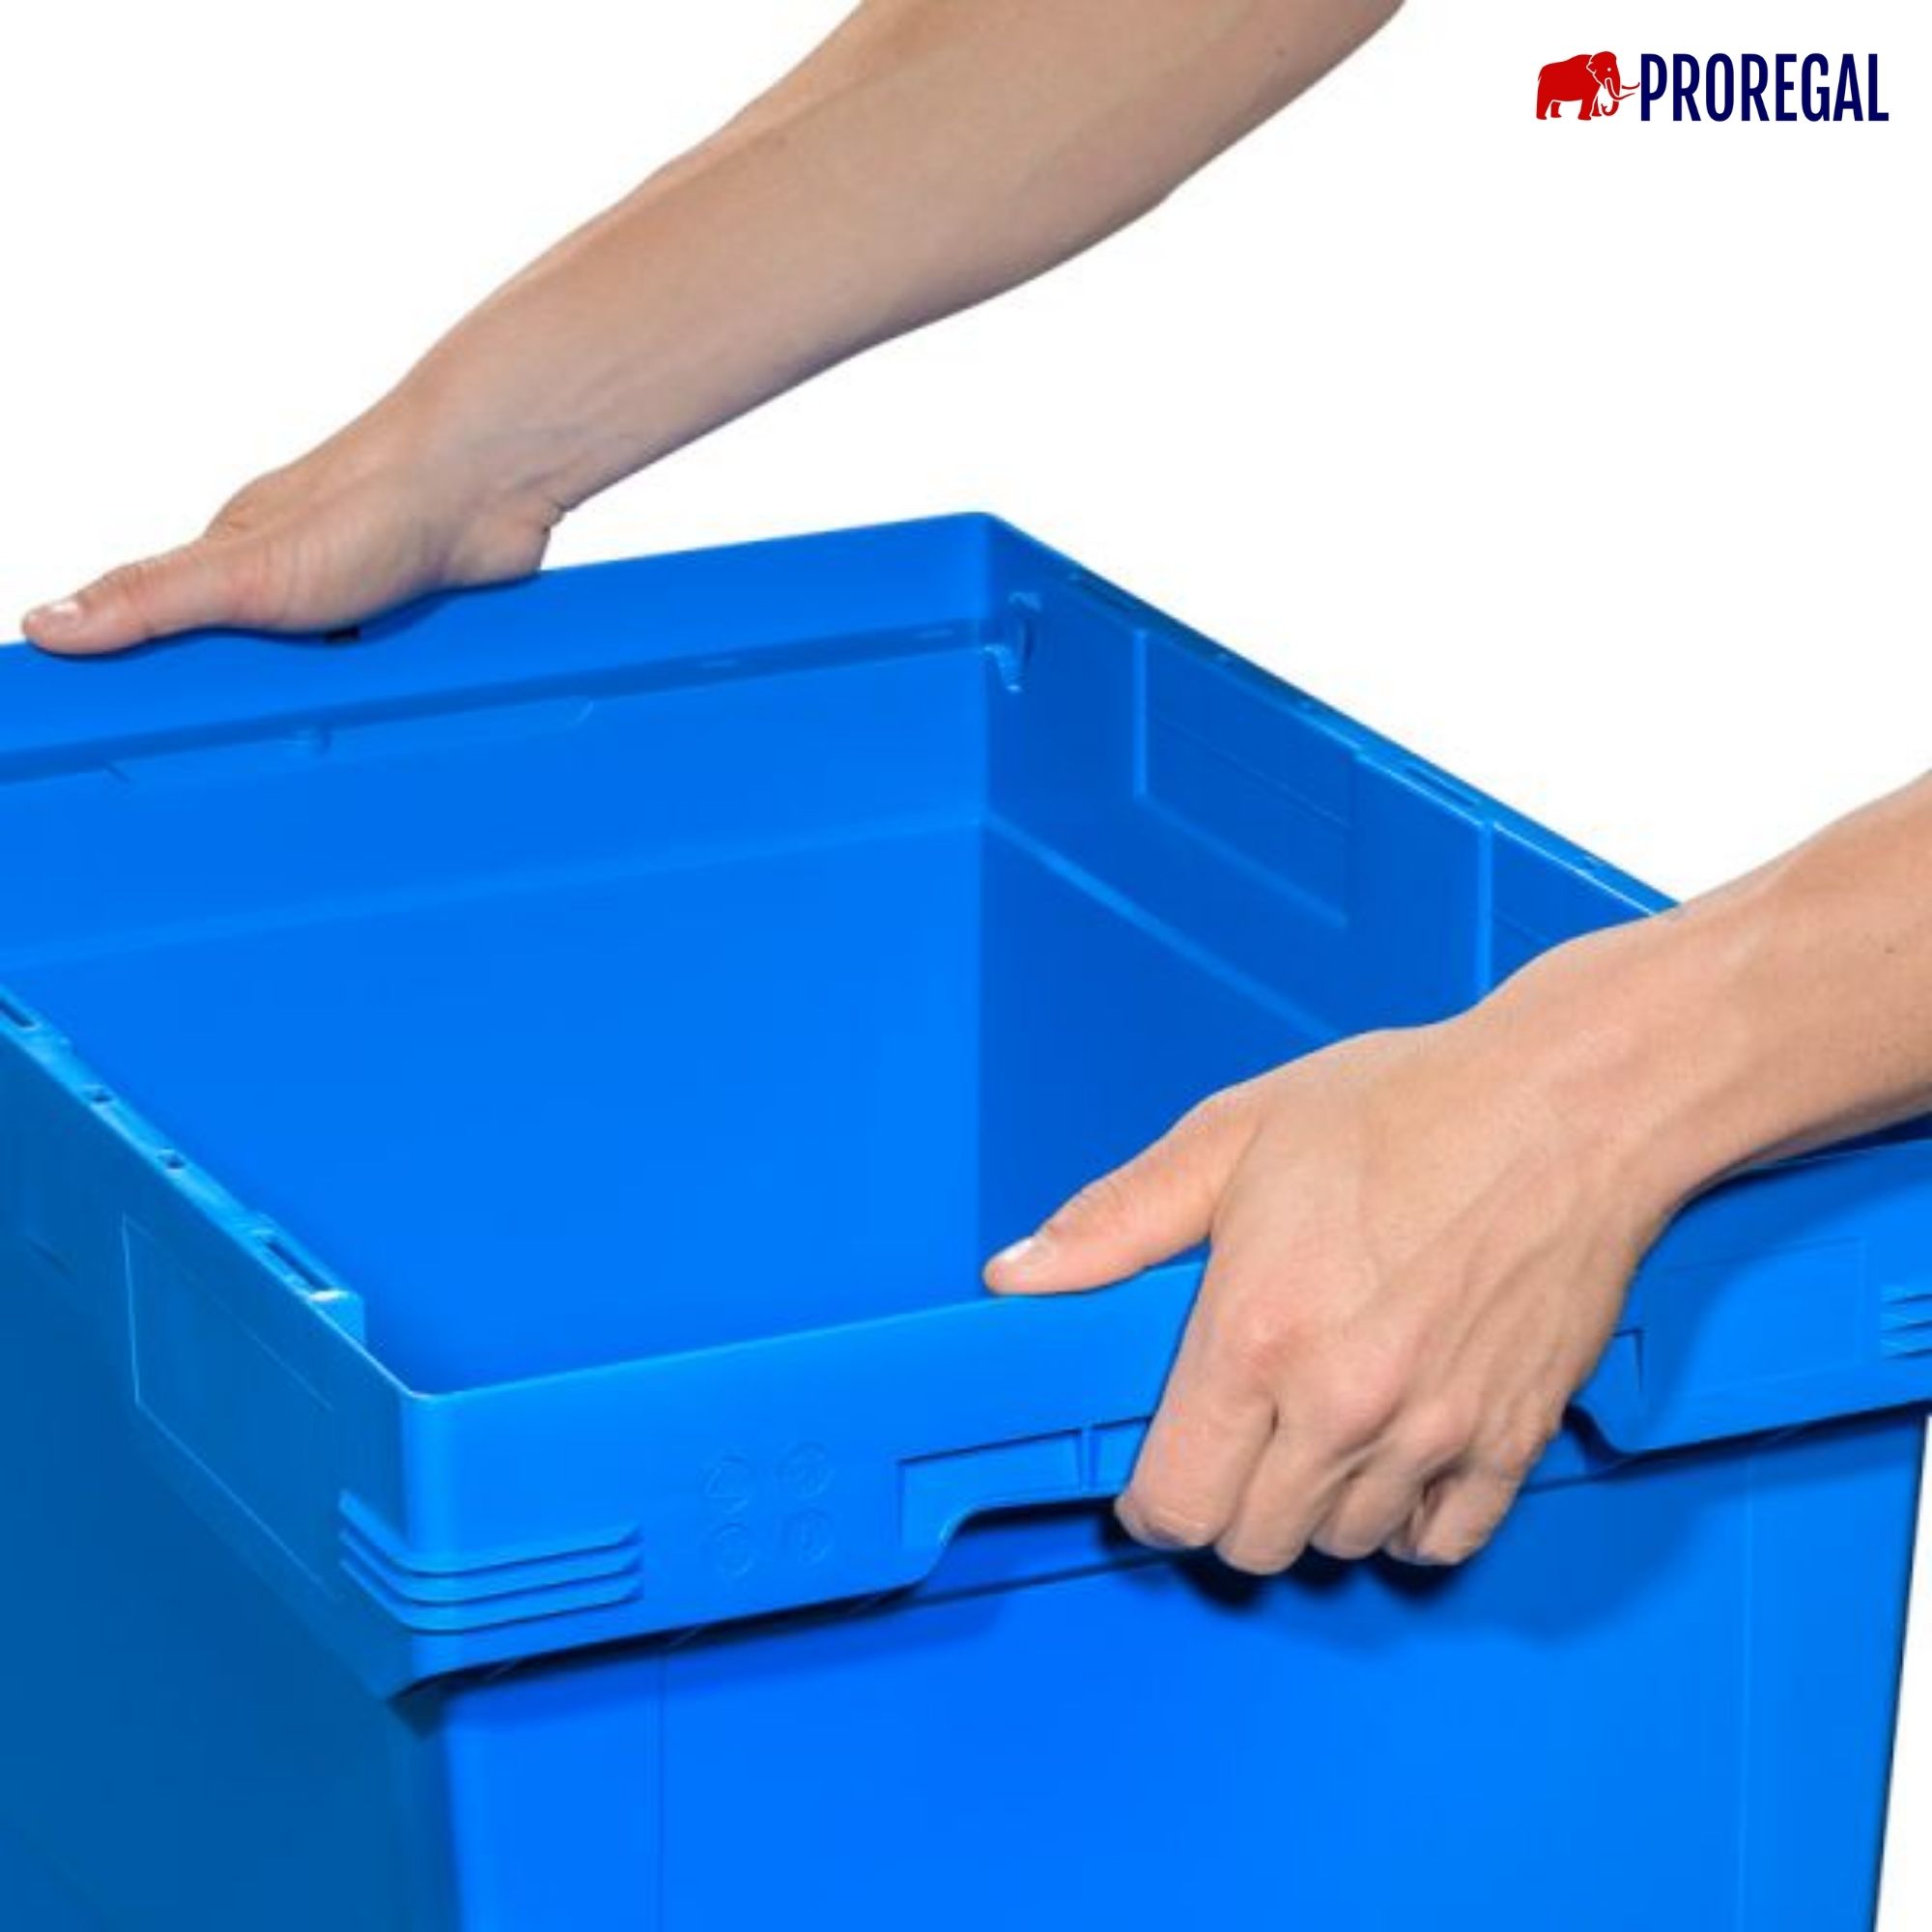 Conical Mehrweg-Stapelbehälter mit Krokodildeckel Blau | HxBxT 34,9x41x61cm | 58 Liter | Lagerbox Eurobox Transportbox Transportbehälter Stapelbehälter